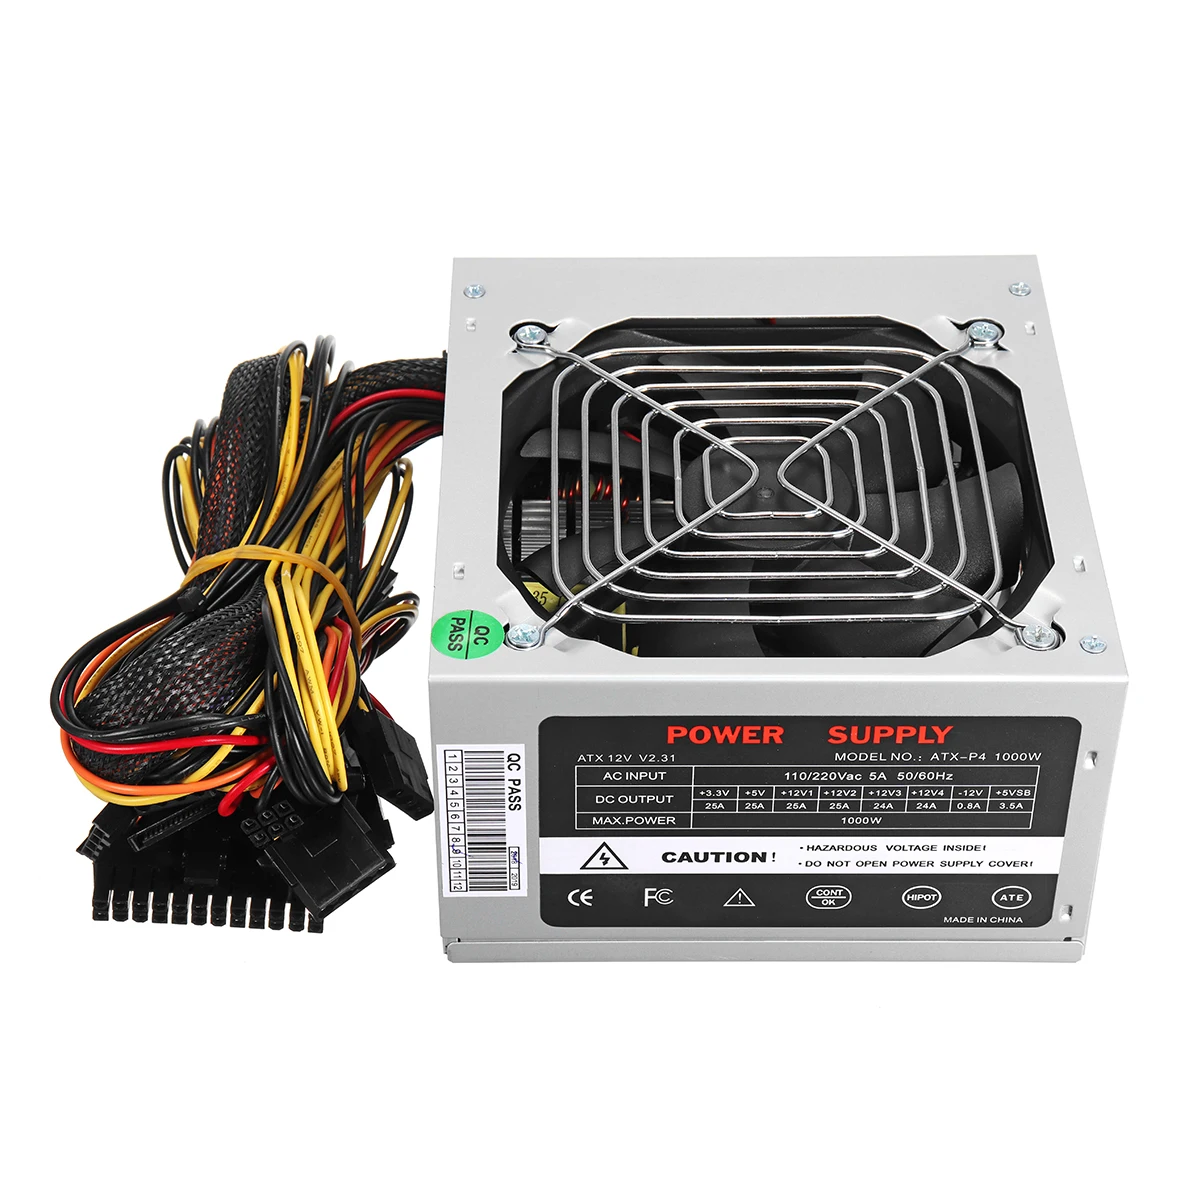 Max 1000W ATX источник питания тихий вентилятор для Intel AMD PC PSU PC компьютер шахтер